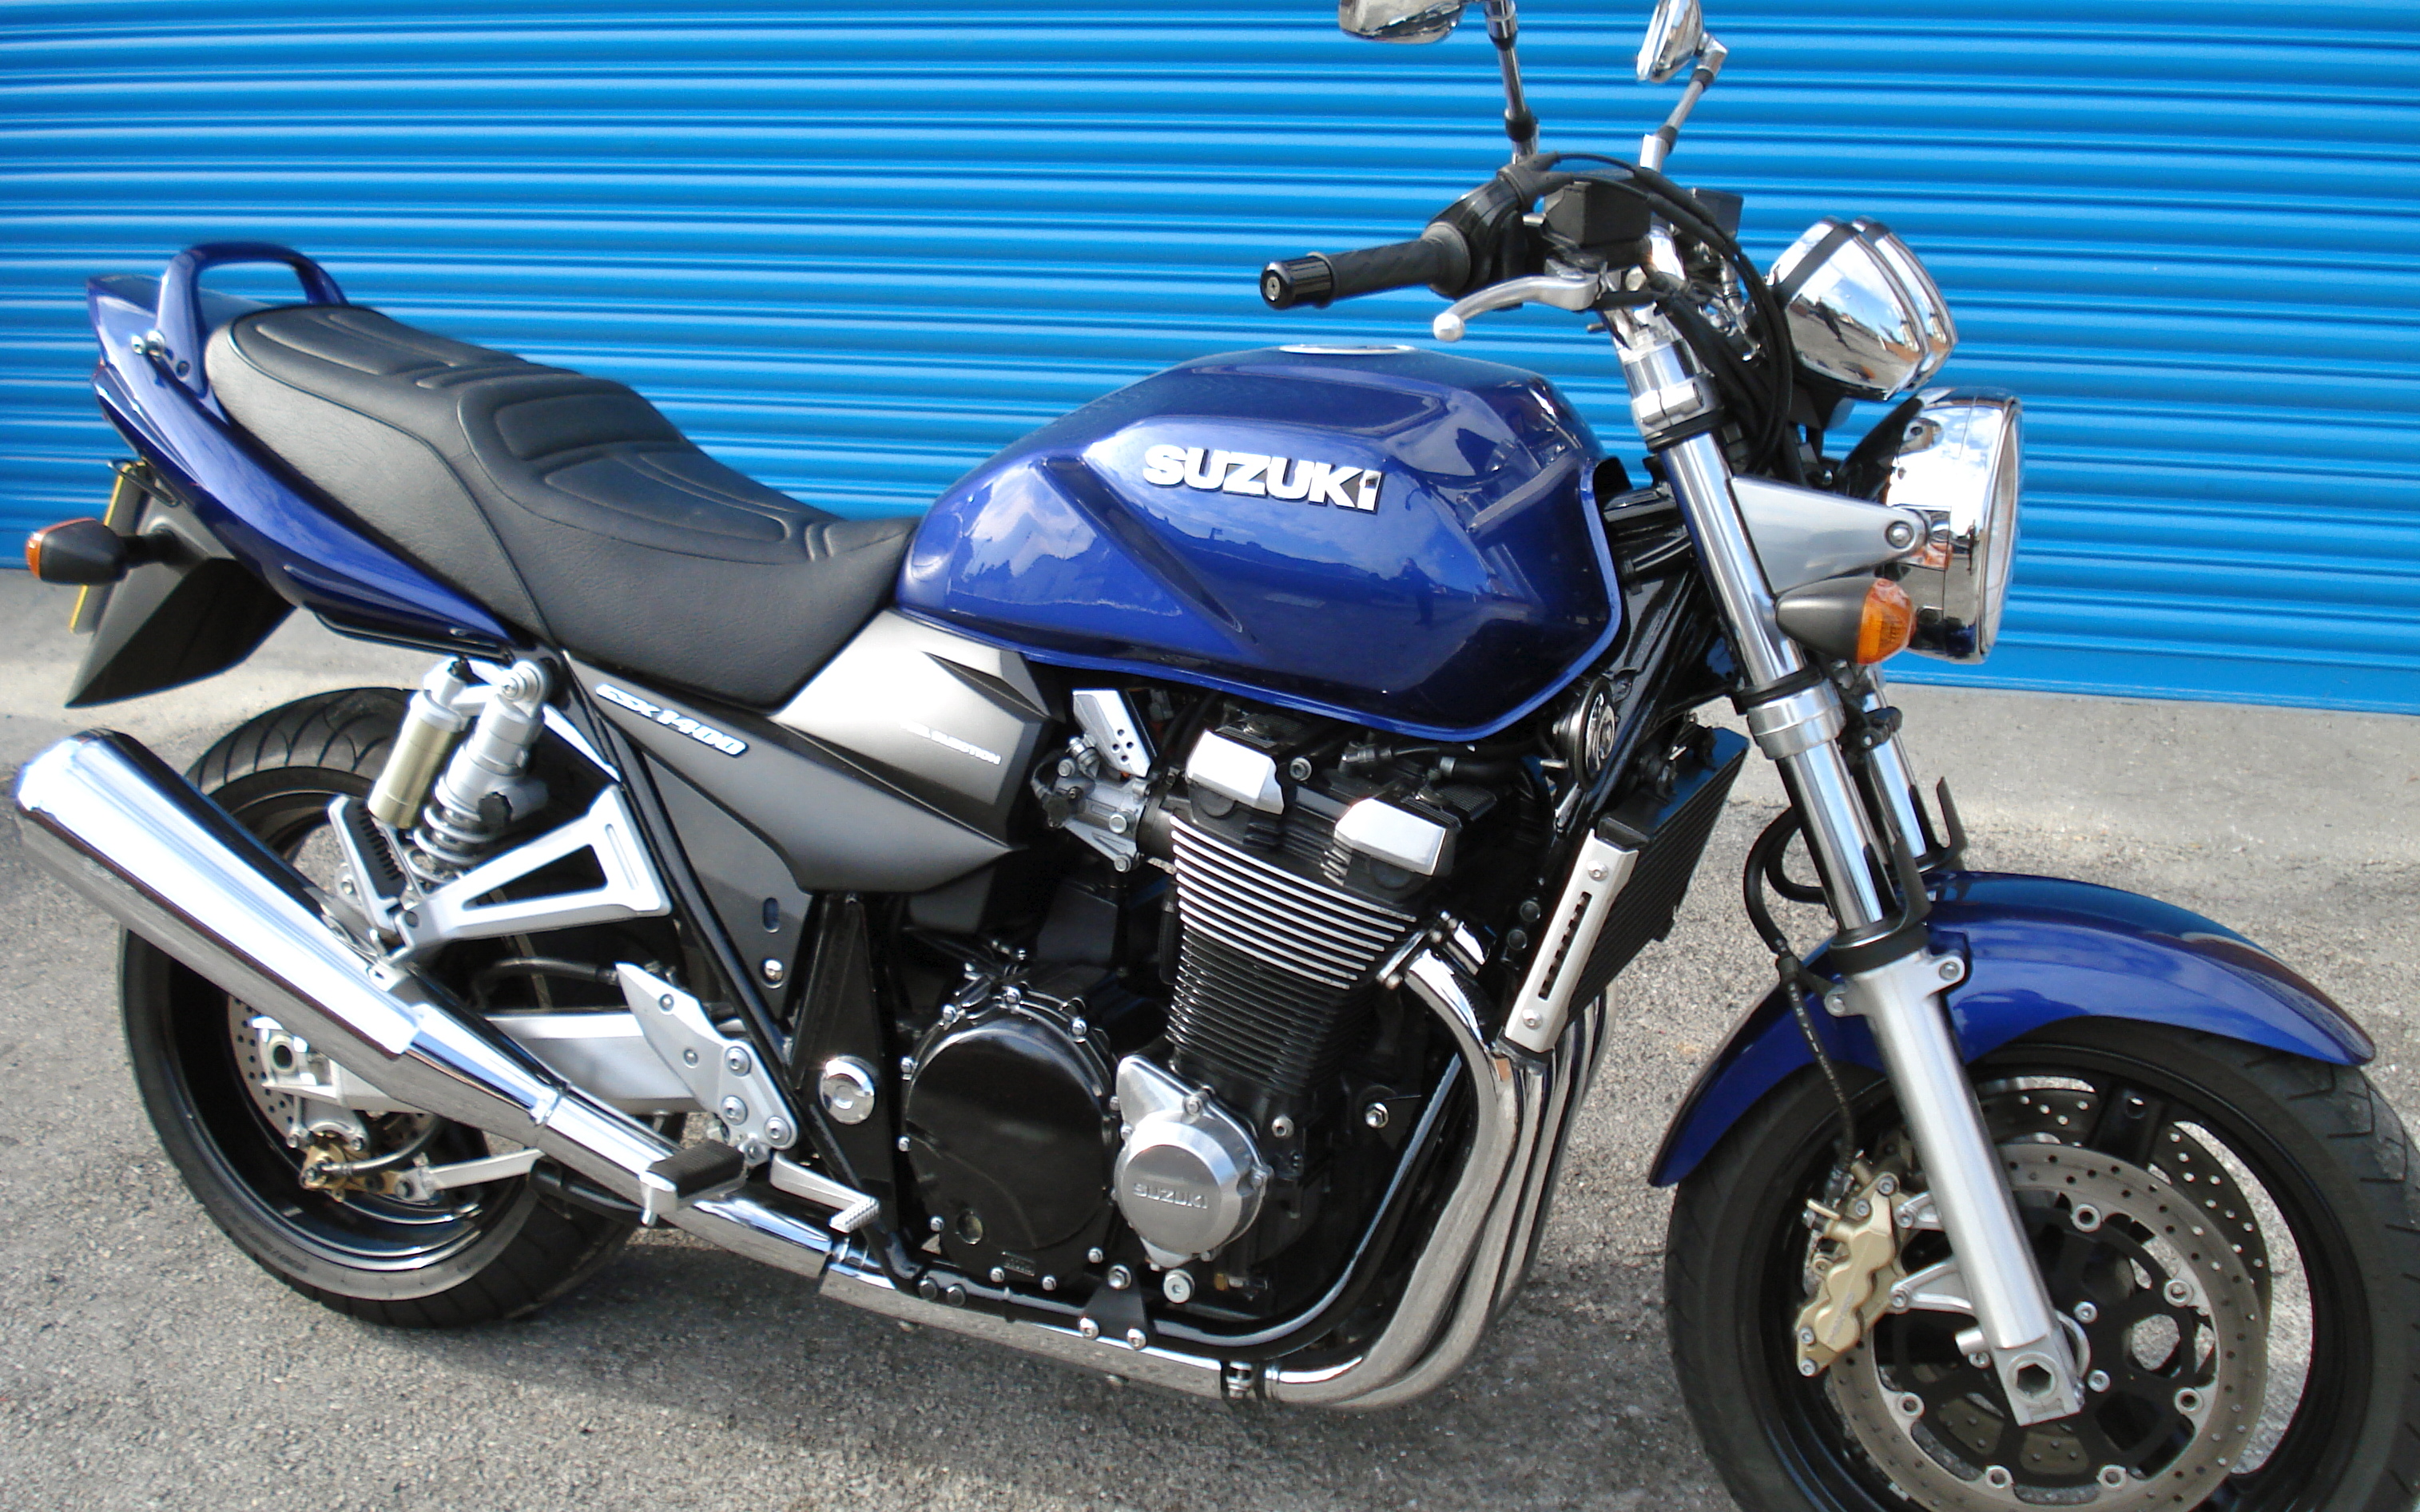 suzuki, suzuki gsx 1400, motorcycles, motorcycle